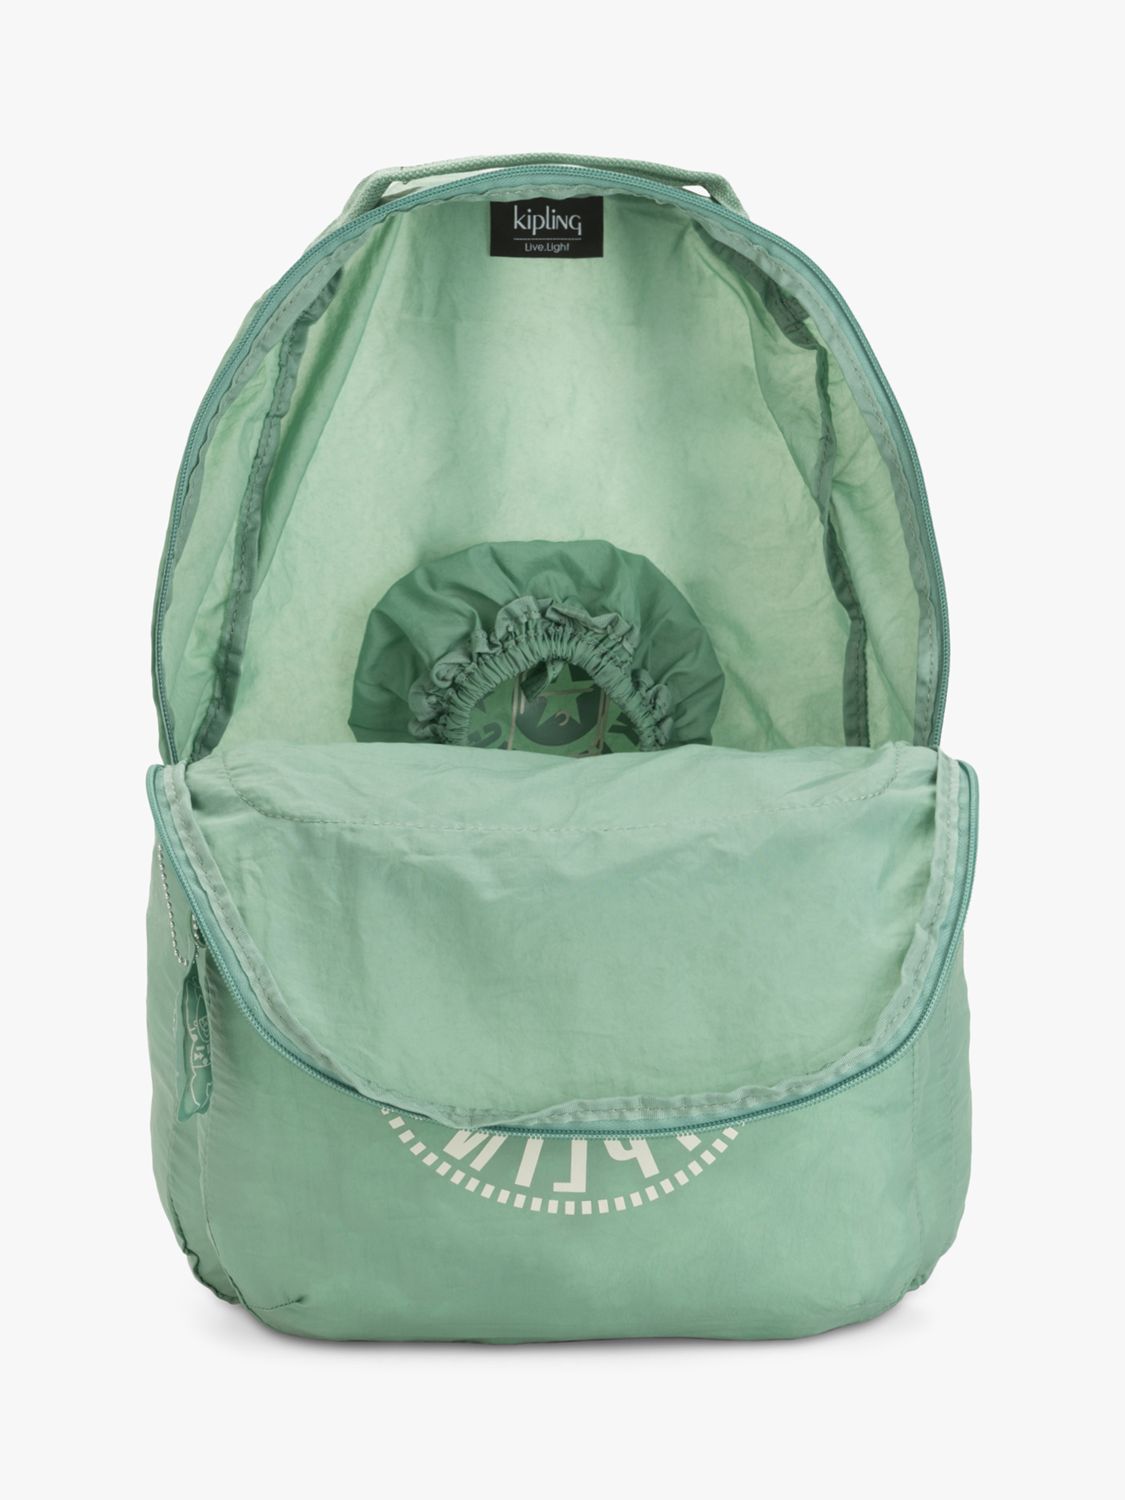 Kipling Seoul Packable Backpack